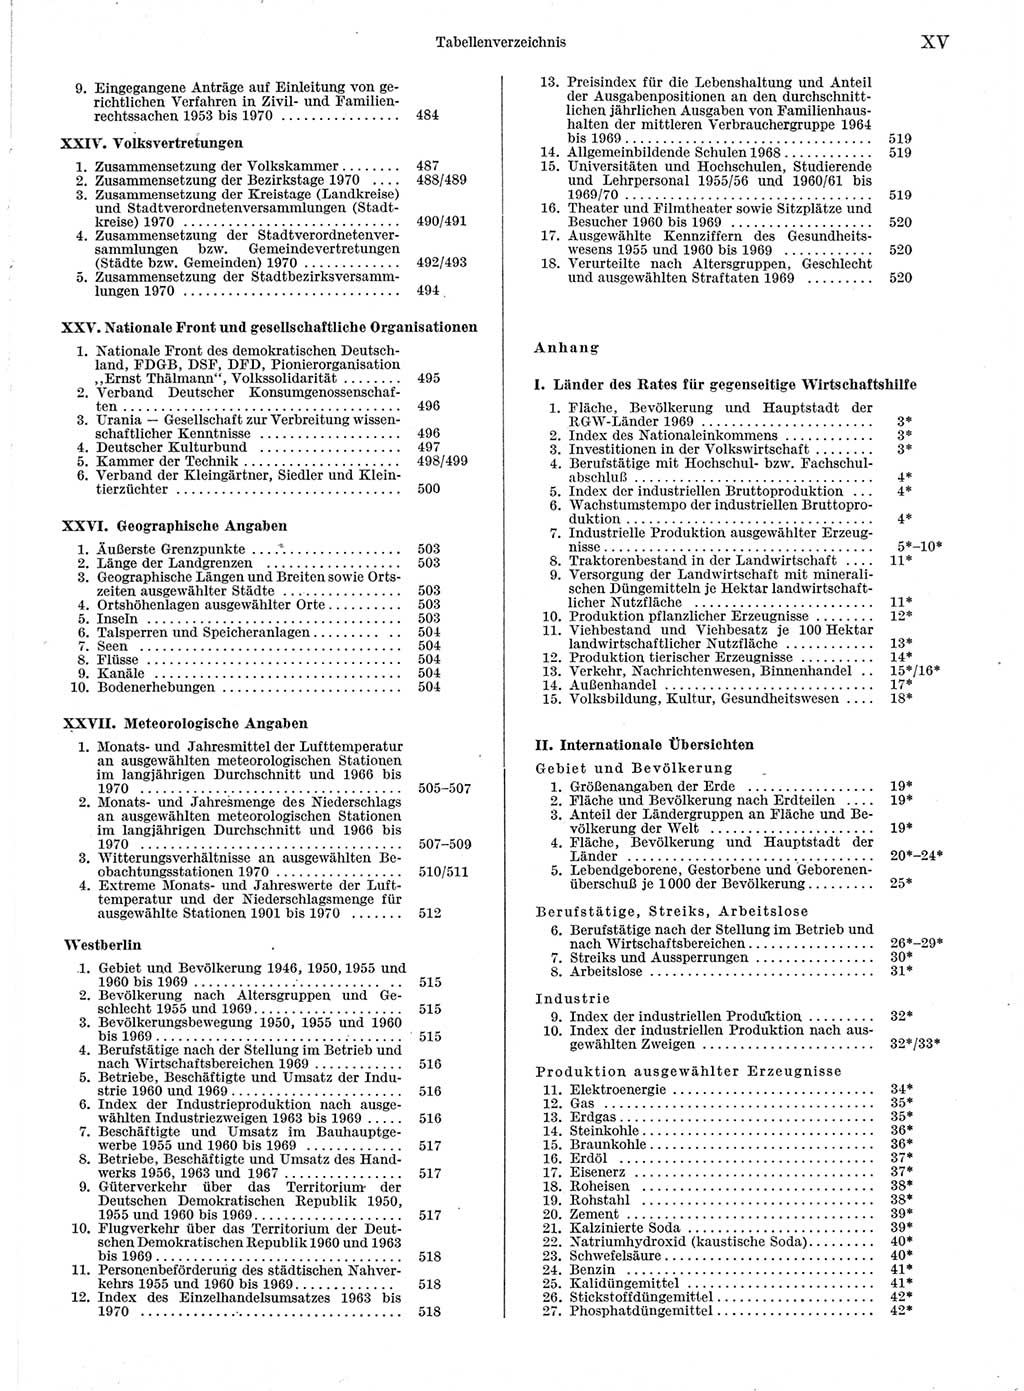 Statistisches Jahrbuch der Deutschen Demokratischen Republik (DDR) 1971, Seite 15 (Stat. Jb. DDR 1971, S. 15)